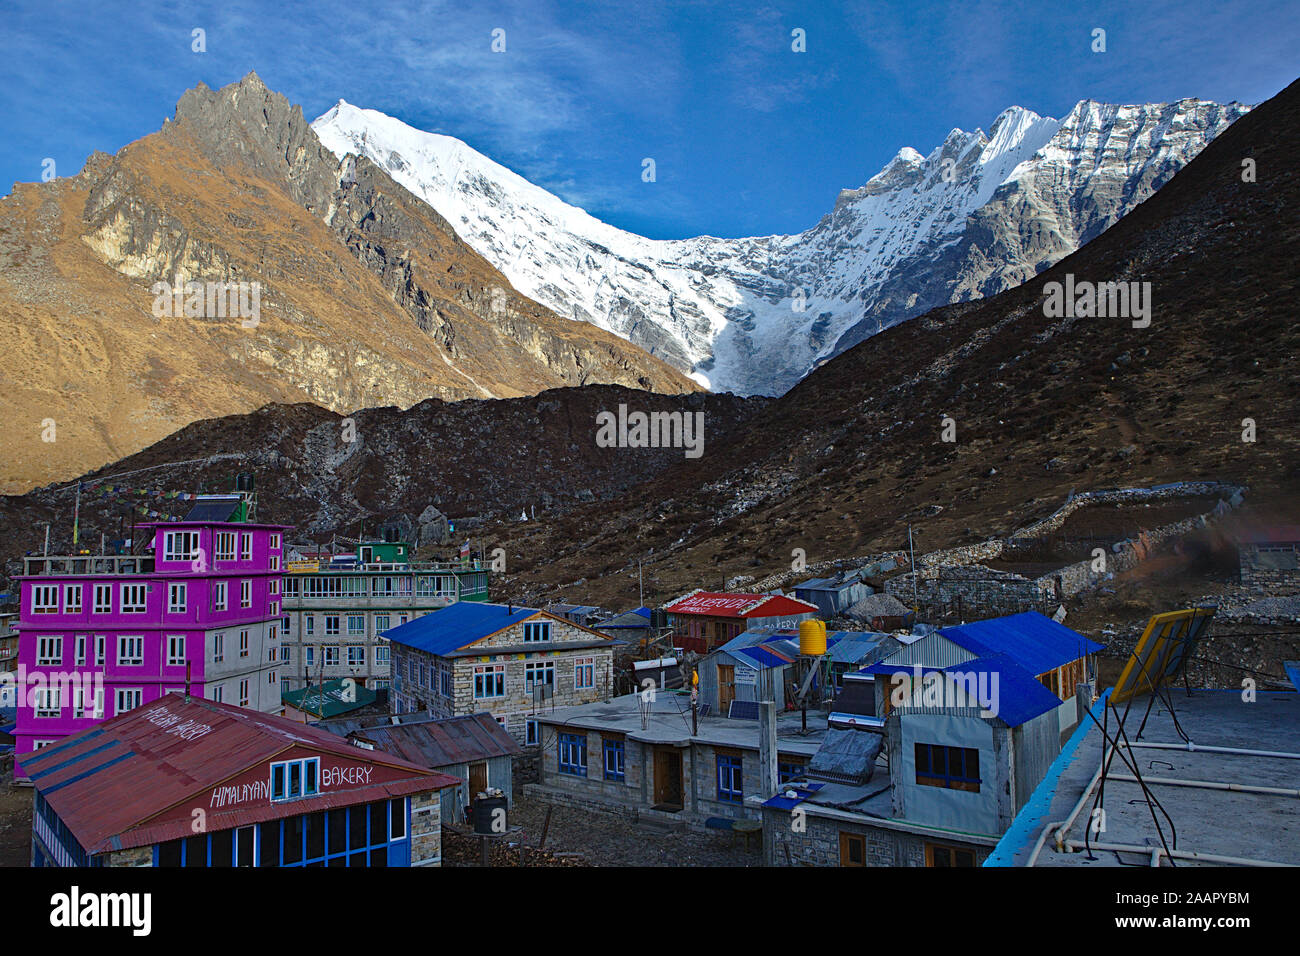 Petit village de Kyanjin Gompa dans l'ombre des montagnes avec des toits bleus et roses house Banque D'Images